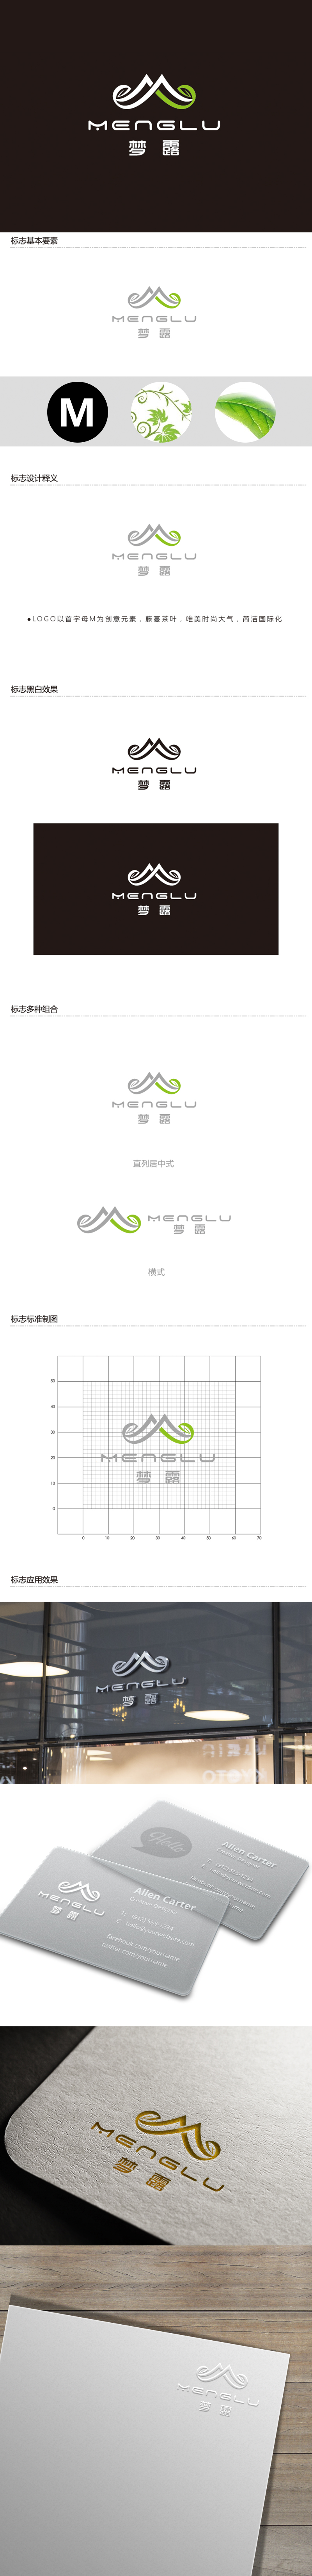 黄安悦的梦露logo设计